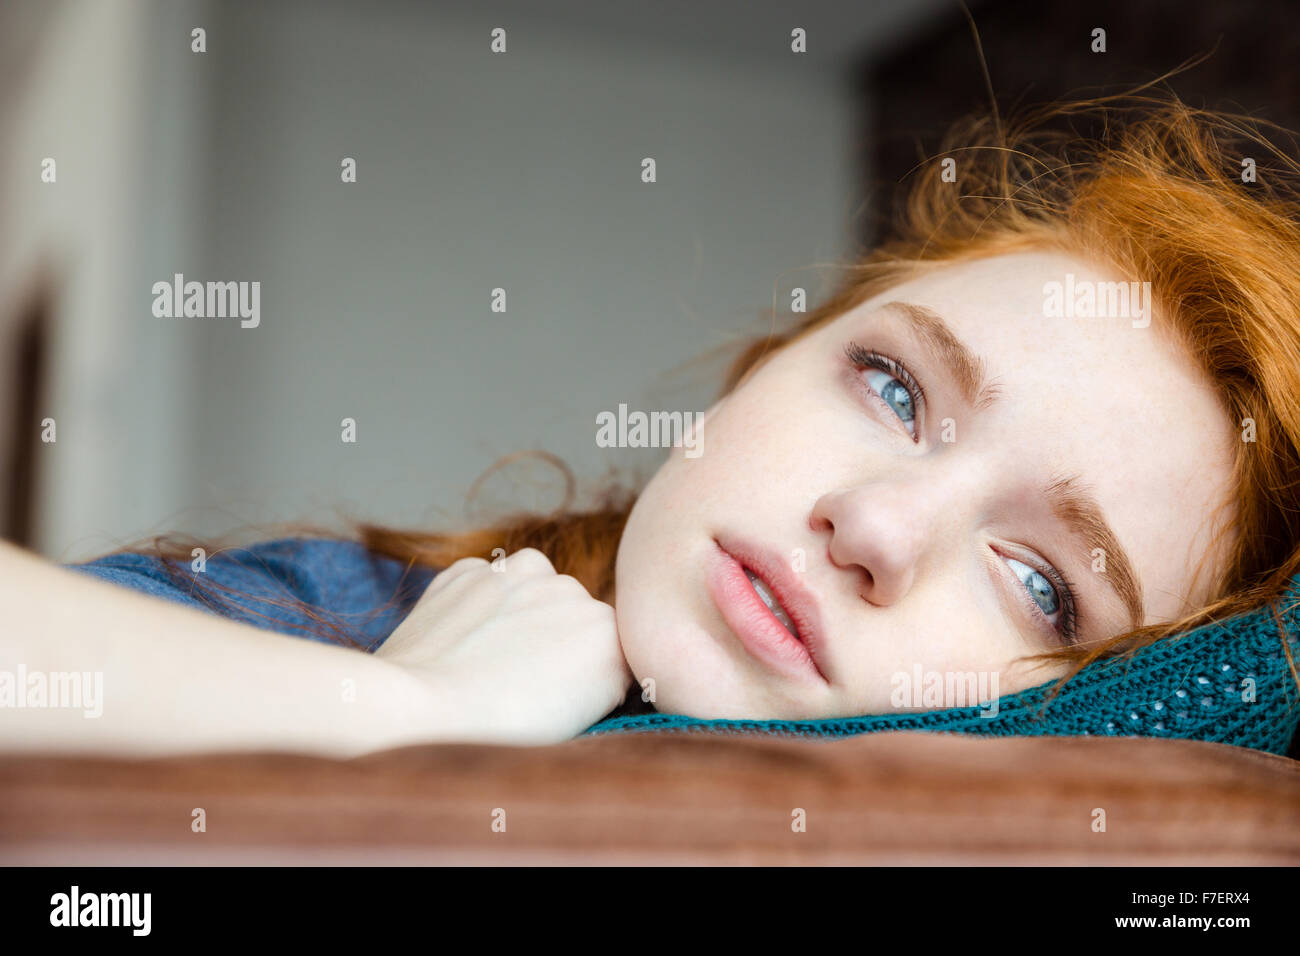 Nachdenklich verärgert müde junge Frau mit roten Haaren auf gestrickte Kissen liegend Stockfoto